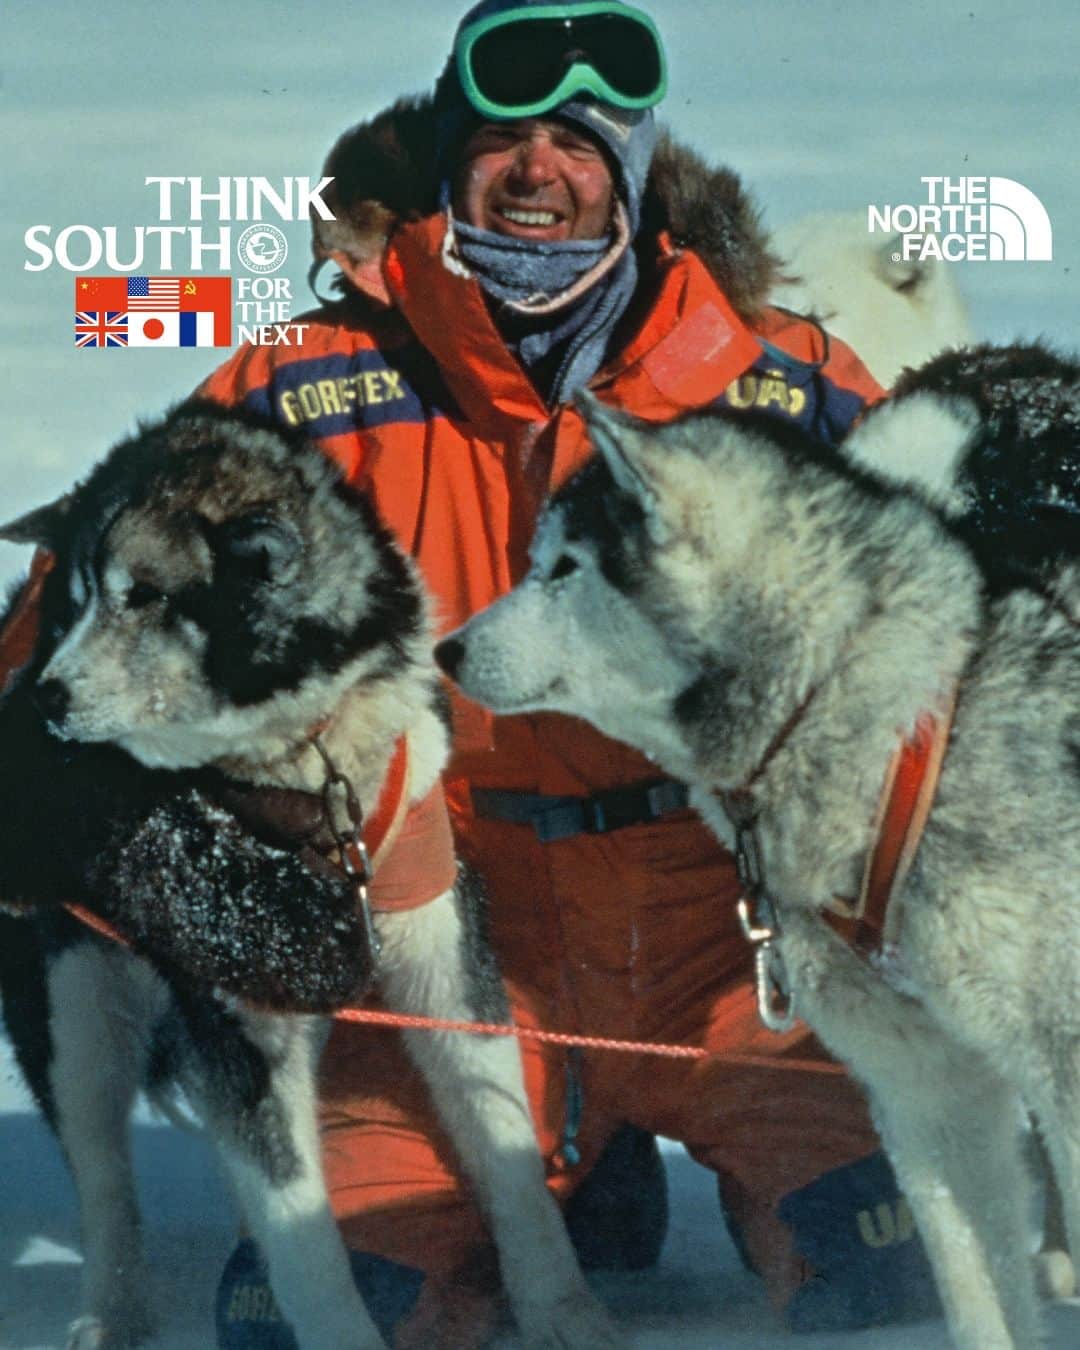 THE NORTH FACE JAPANのインスタグラム：「THINK SOUTH FOR THE NEXT 2023  1989年に世界初となる南極犬ぞり横断に挑戦し、それを達成した6カ国6名の冒険家。  「THINK SOUTH FOR THE NEXT」は当時彼らが考え、南極点から世界に発信した現代社会の問題に改めて注目し、環境と平和の大切さ、チャレンジスピリットの重要性を次世代へ継承するプロジェクトです。  2023年は彼らの挑戦を振り返ると共に、社会的なテーマを先入観に縛られないニュートラルな視点から発信するNEUT Magazineの編集長 平山潤氏と、若者の投票率が80%を超えるデンマークに留学し、若い世代の政治参加を促進するNO YOUTH NO JAPANを設立した能條桃子氏お招きし、「チャレンジスピリット」をテーマに掲げトークセッションを行います。 また、ゲストに南極大陸犬ぞり横断のメンバーである冒険家の舟津圭三氏をお招きし、当時の貴重な体験談をはじめ、現代の環境や平和に対しての想いなどを紐解きながら、より多様な視点で本プロジェクトへの理解を深めていきます。  *イベントの応募については、以下サイトとプロフィール欄ハイライトからご確認いただけます。 https://www.goldwin.co.jp/tnf/whatsnew/detail/?pi3=23411&pi=23410  THINK SOUTH FOR THE NEXT Website: https://www.think-south.com/  #ザノースフェイス #thenorthface #neverstopexploring #thinksouth #thinksouthforthenext2023 #transantarcticaexpedition」